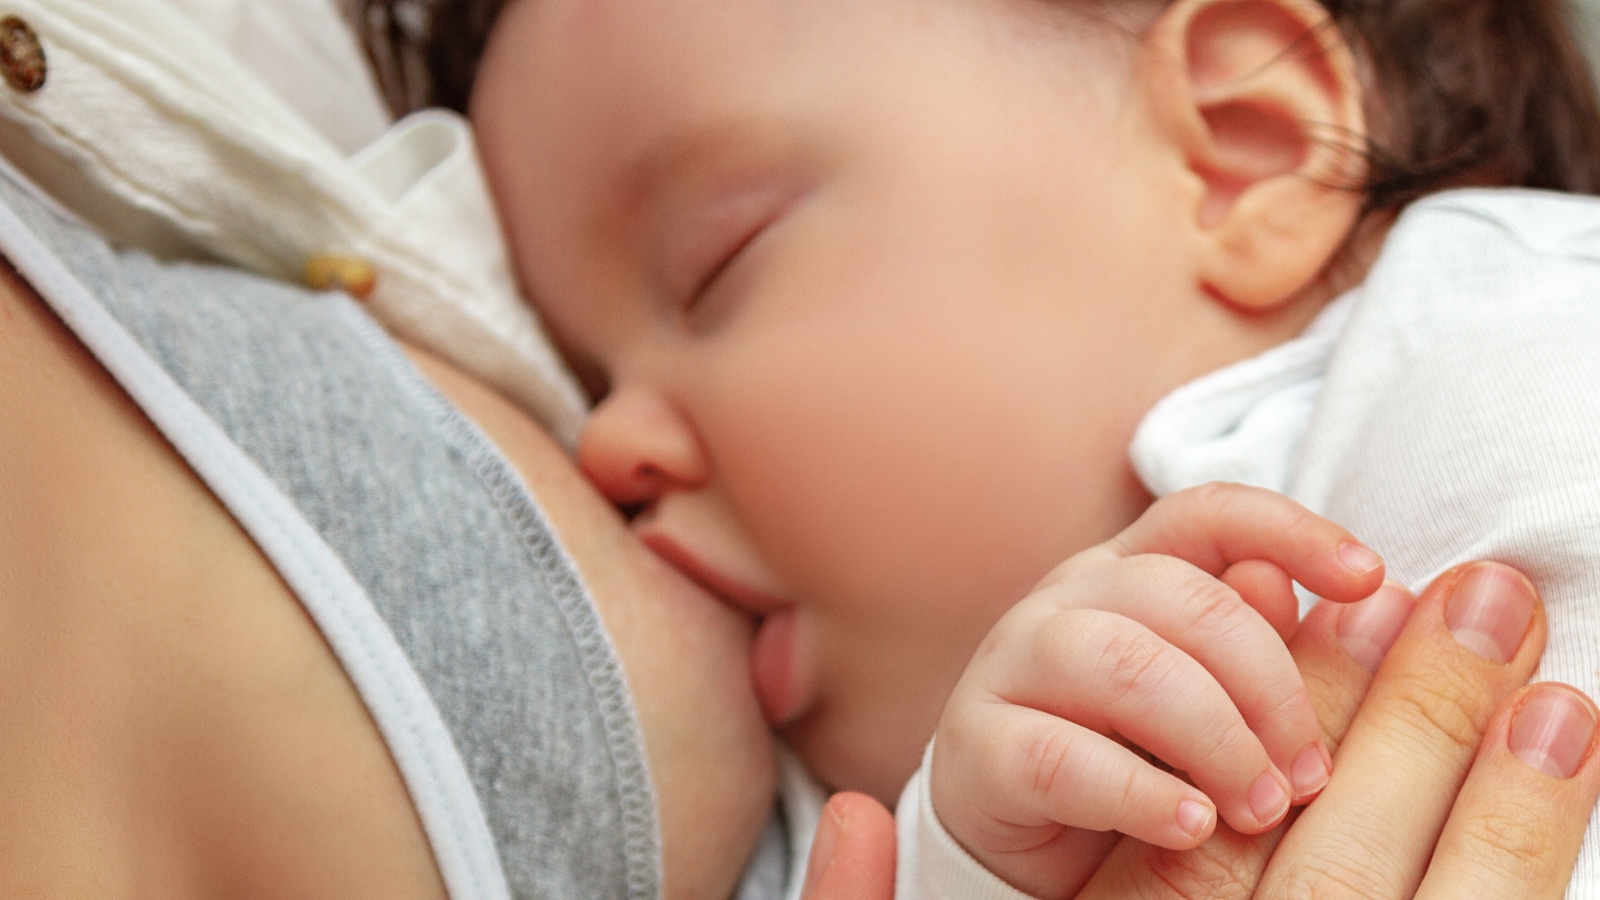 Los azúcares en la leche materna pueden ayudar a prevenir infecciones de la sangre en los recién nacidos: estudio